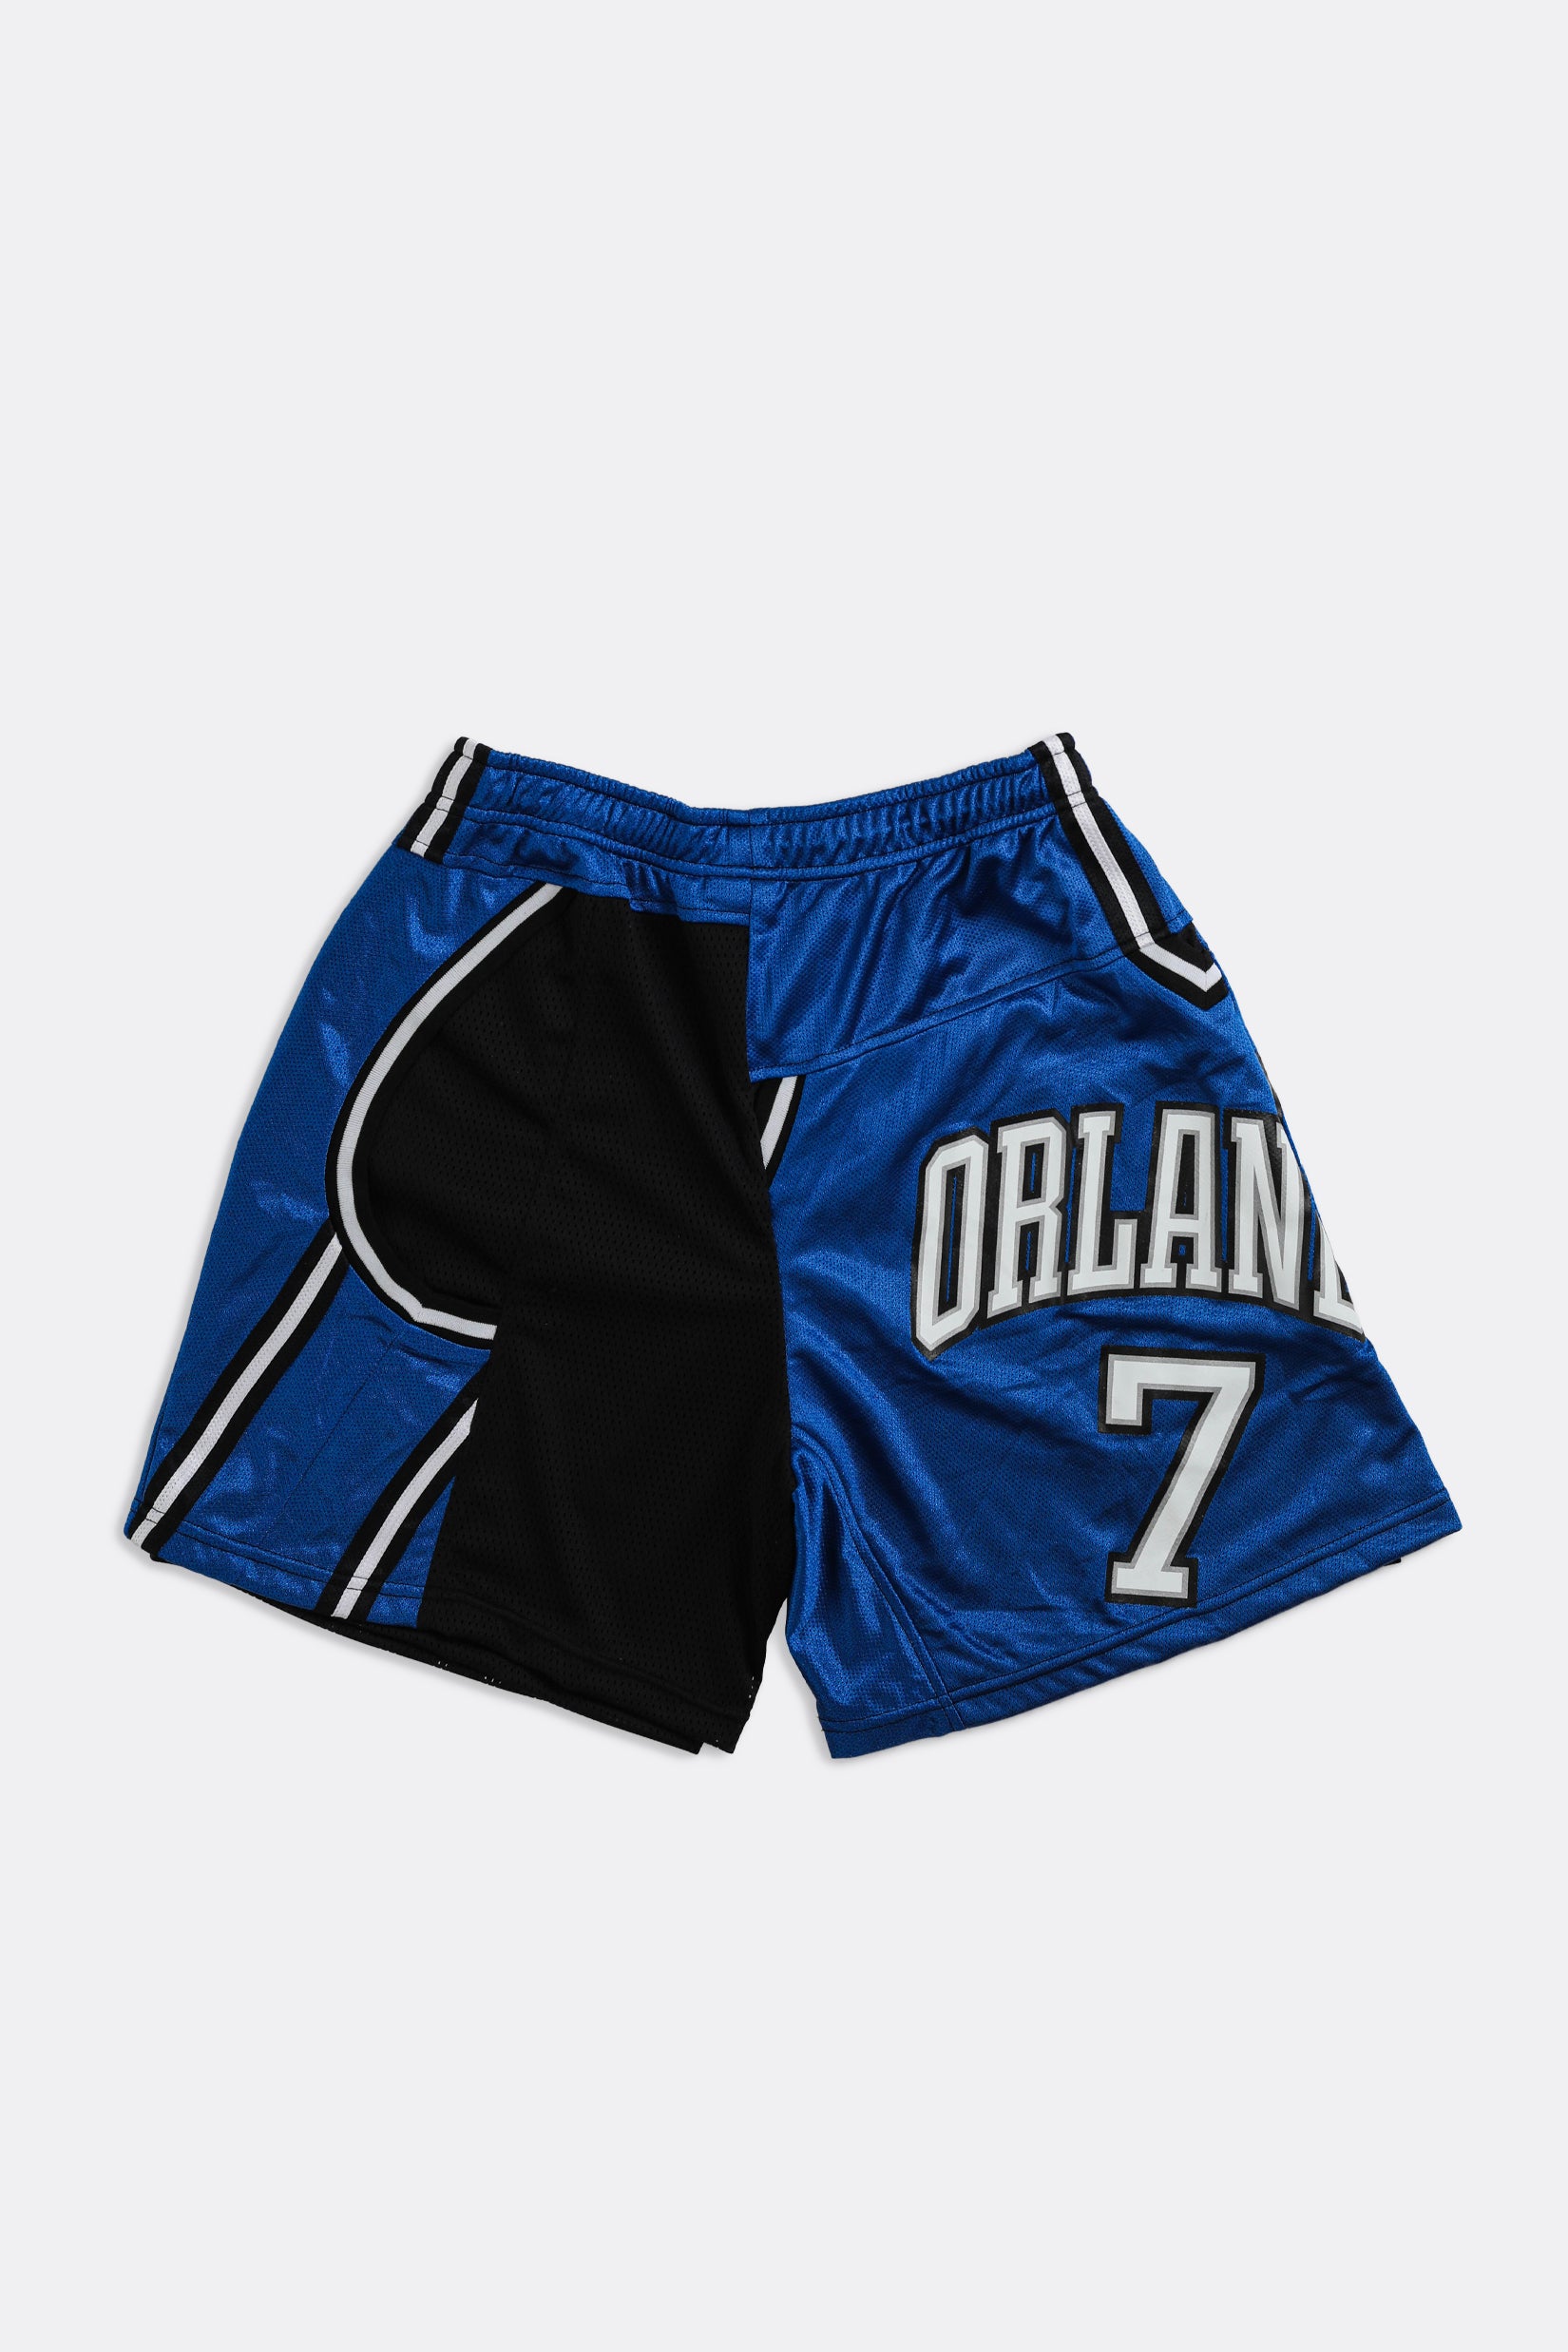 Official Orlando Magic Shorts, Basketball Shorts, Gym Shorts